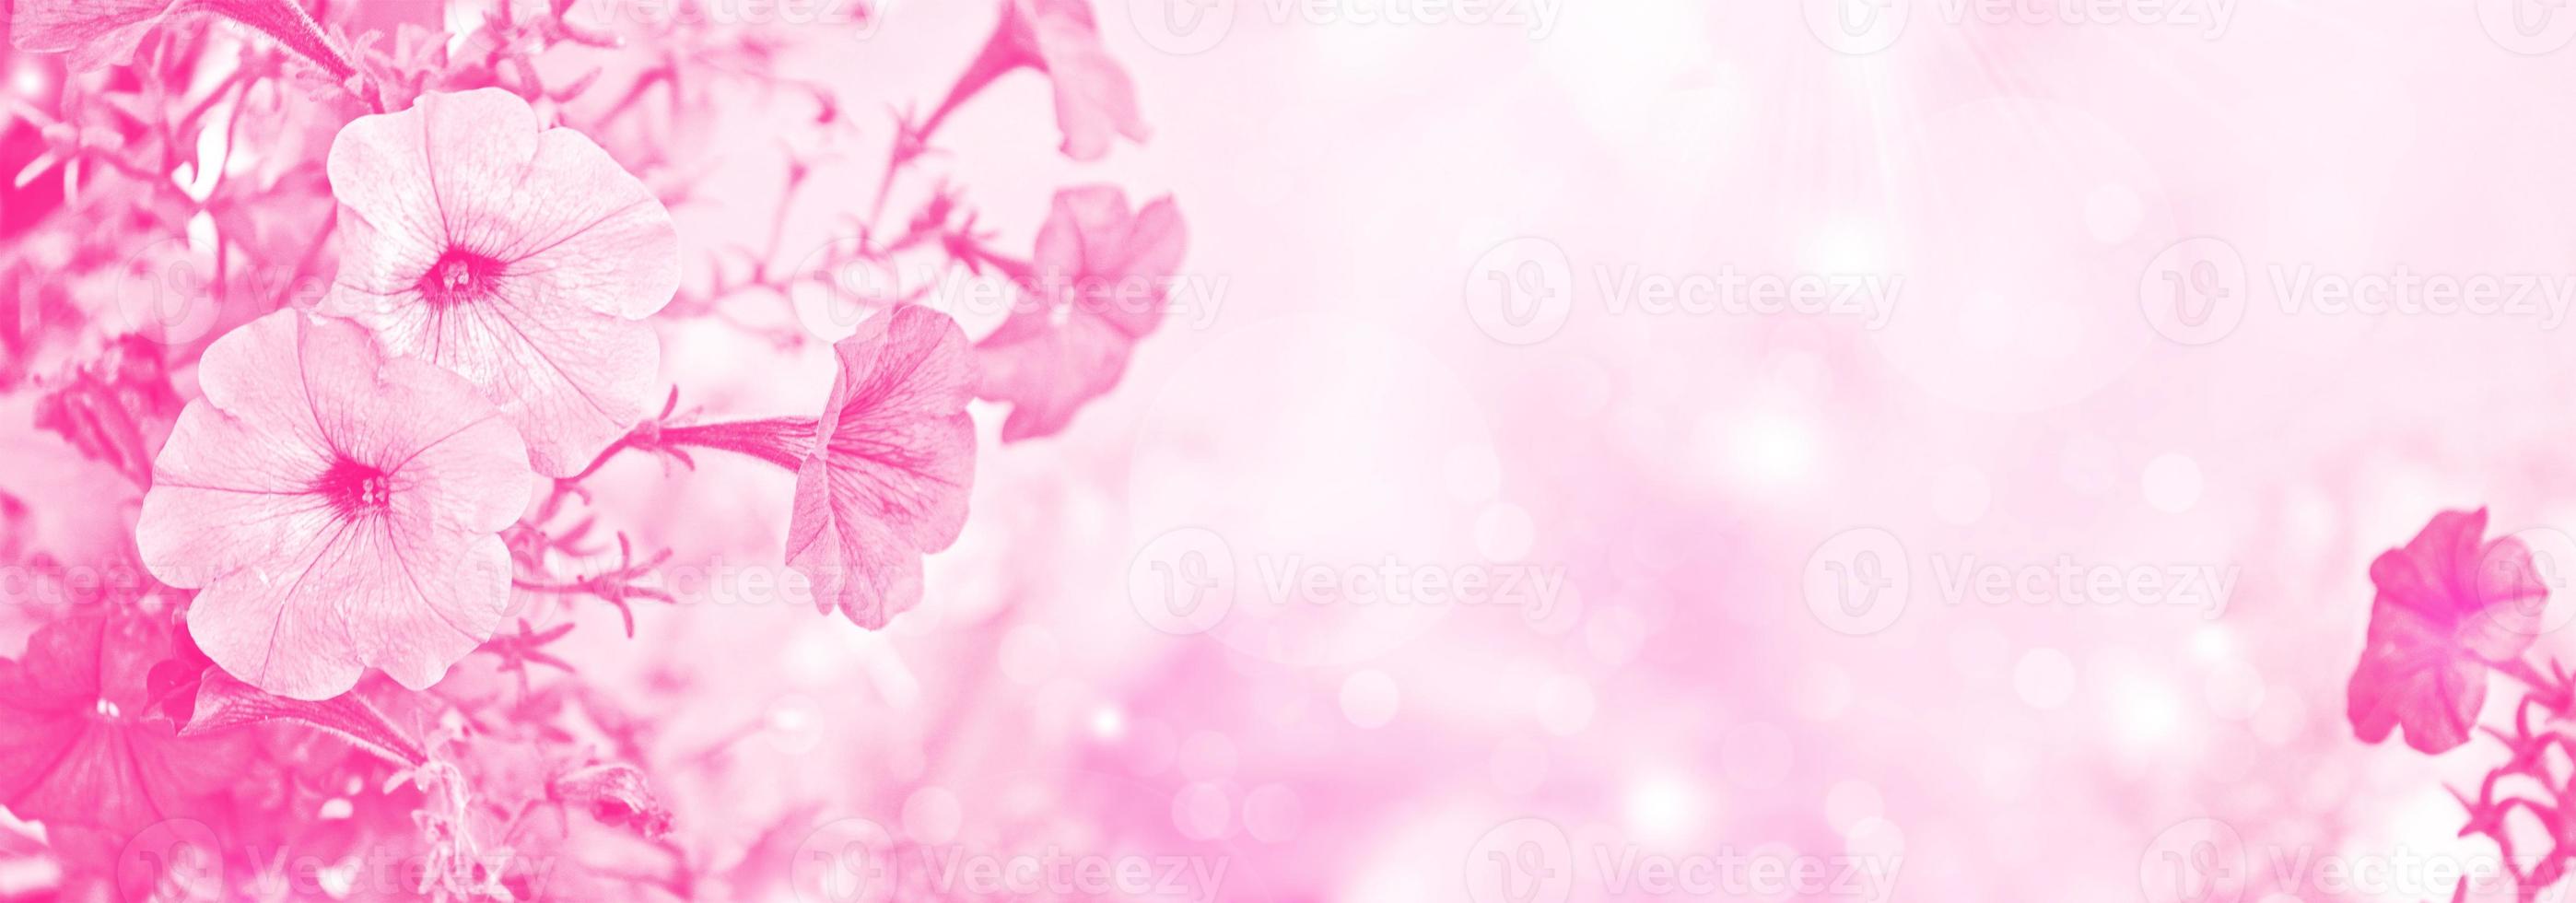 närbild av en petunia på en rabatt, rosa blommor, blommig bakgrund. foto